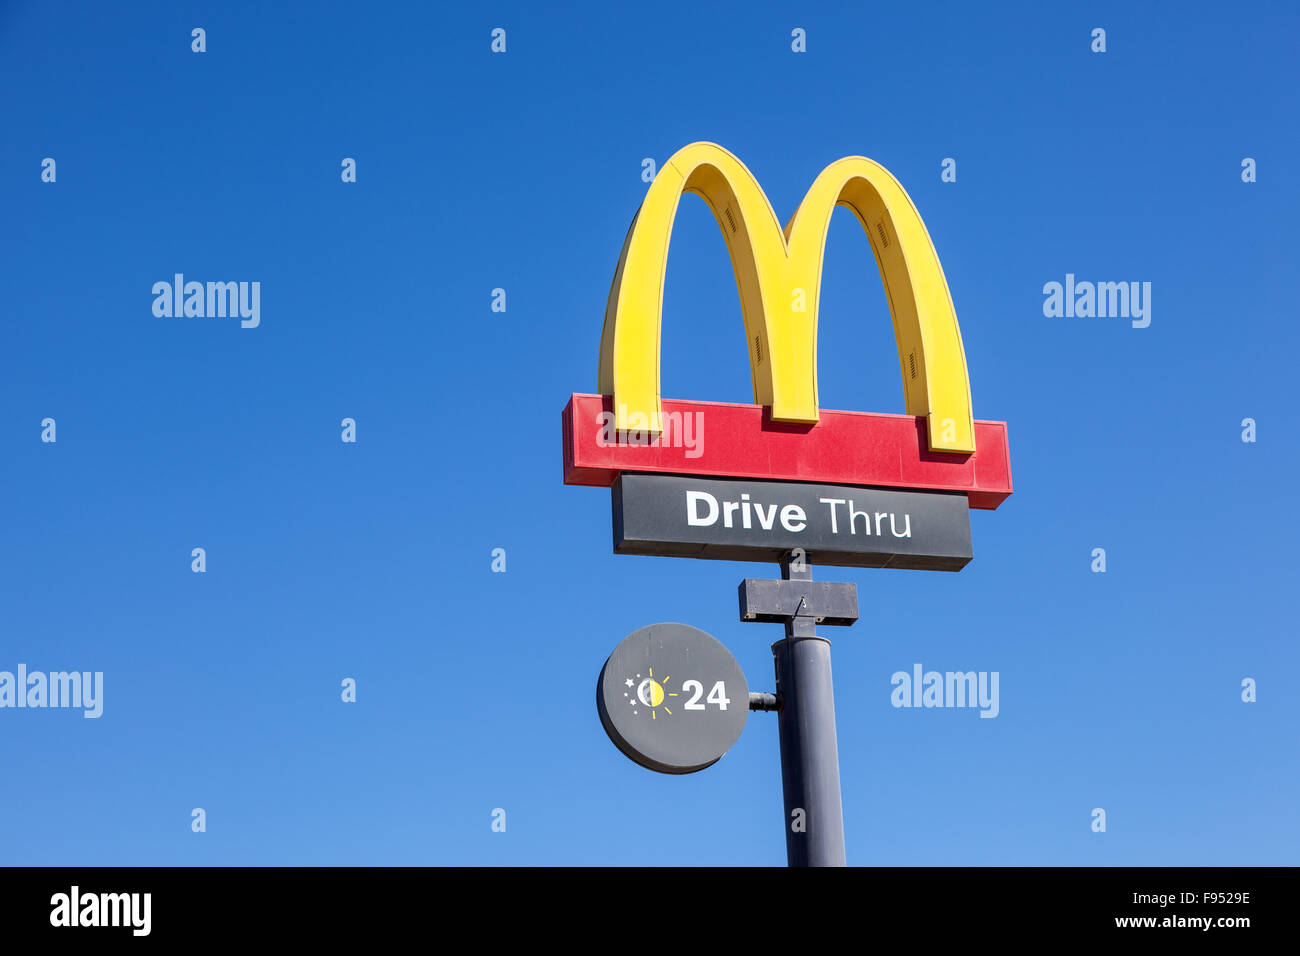 McDonald's fast food restaurant logo Banque D'Images